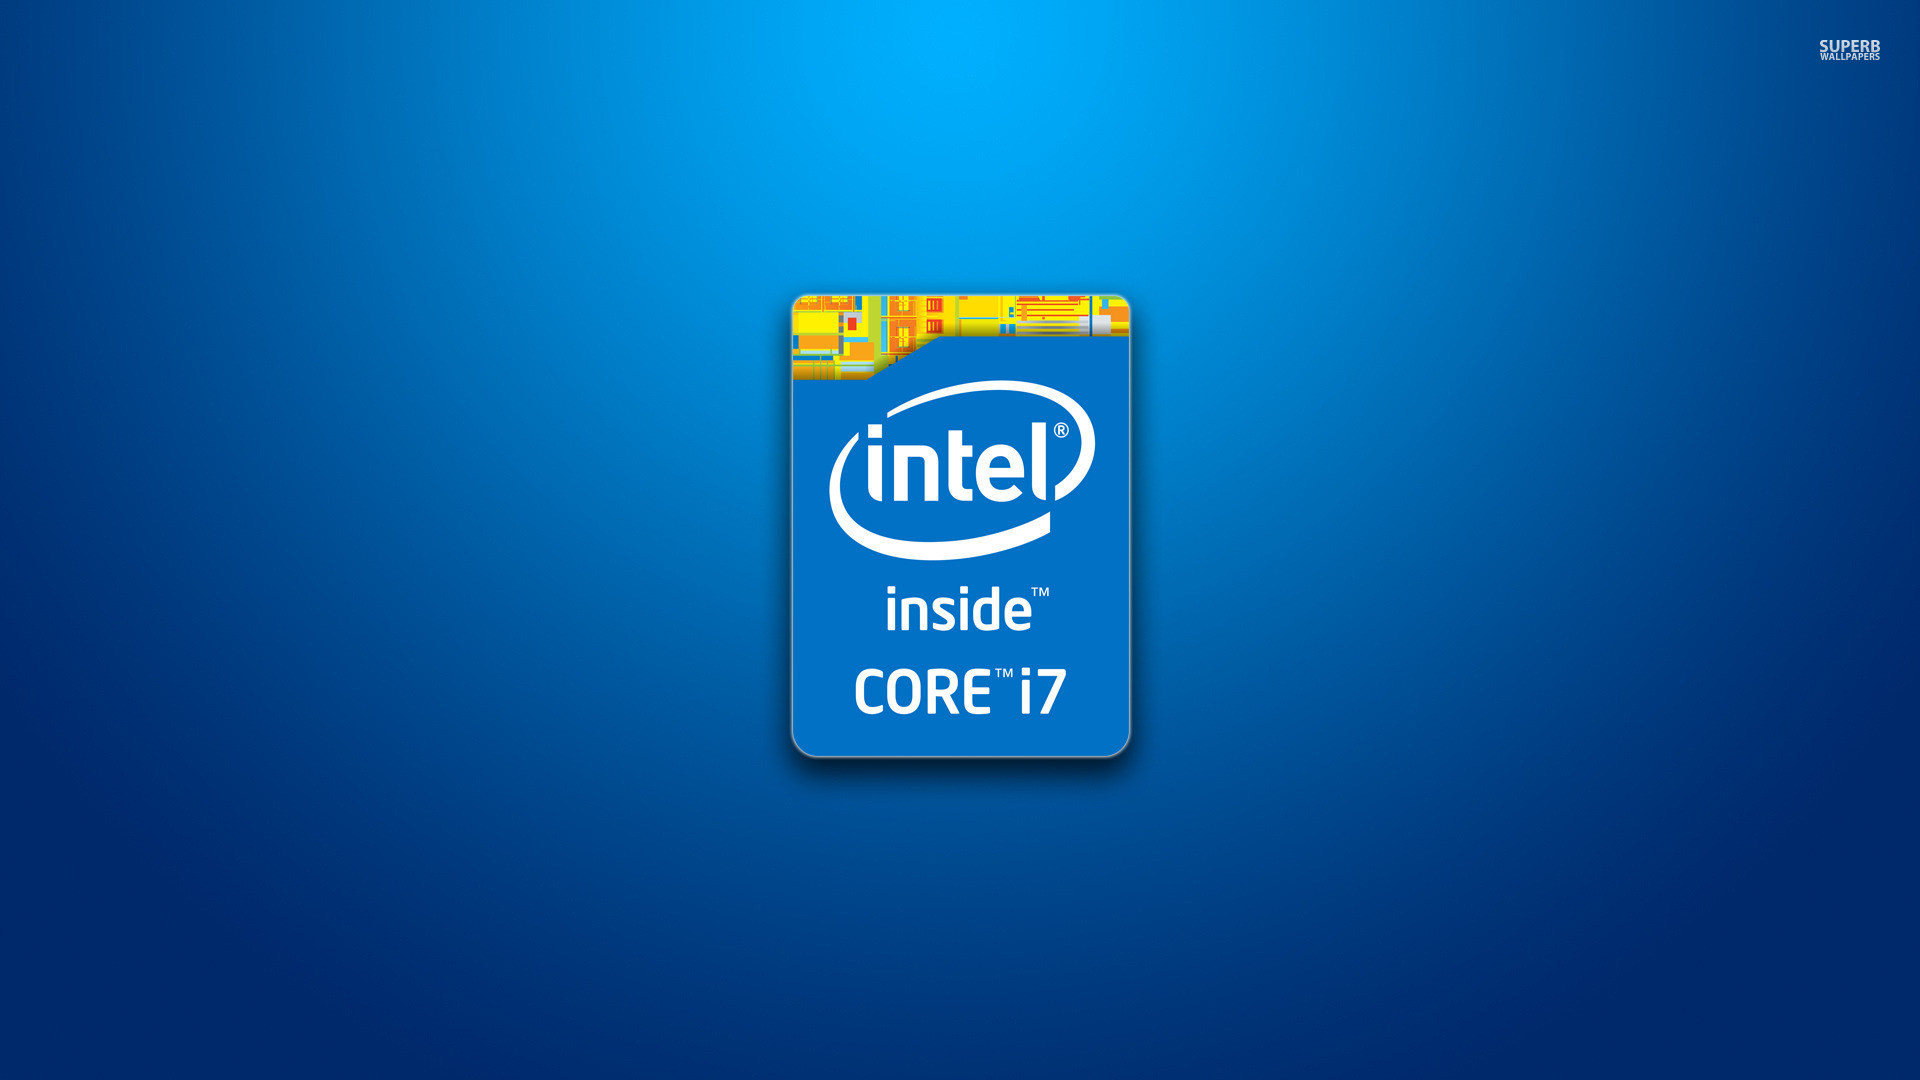 Intel Wallpaper 1920x1080 HD (77+ images)